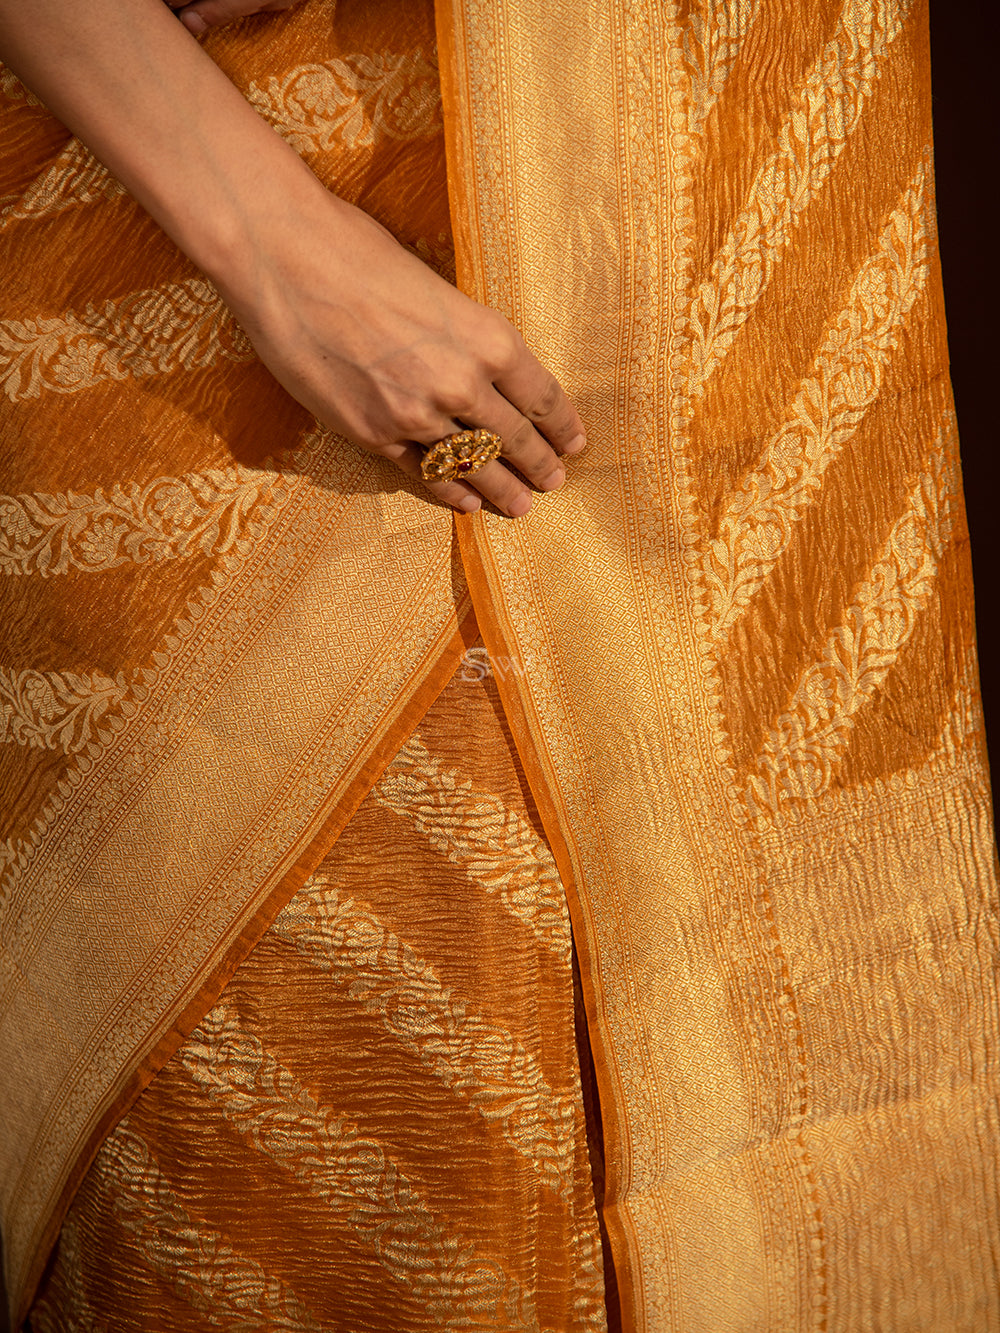 Orange Leheriya Crush Tissue Handloom Banarasi Saree - Sacred Weaves